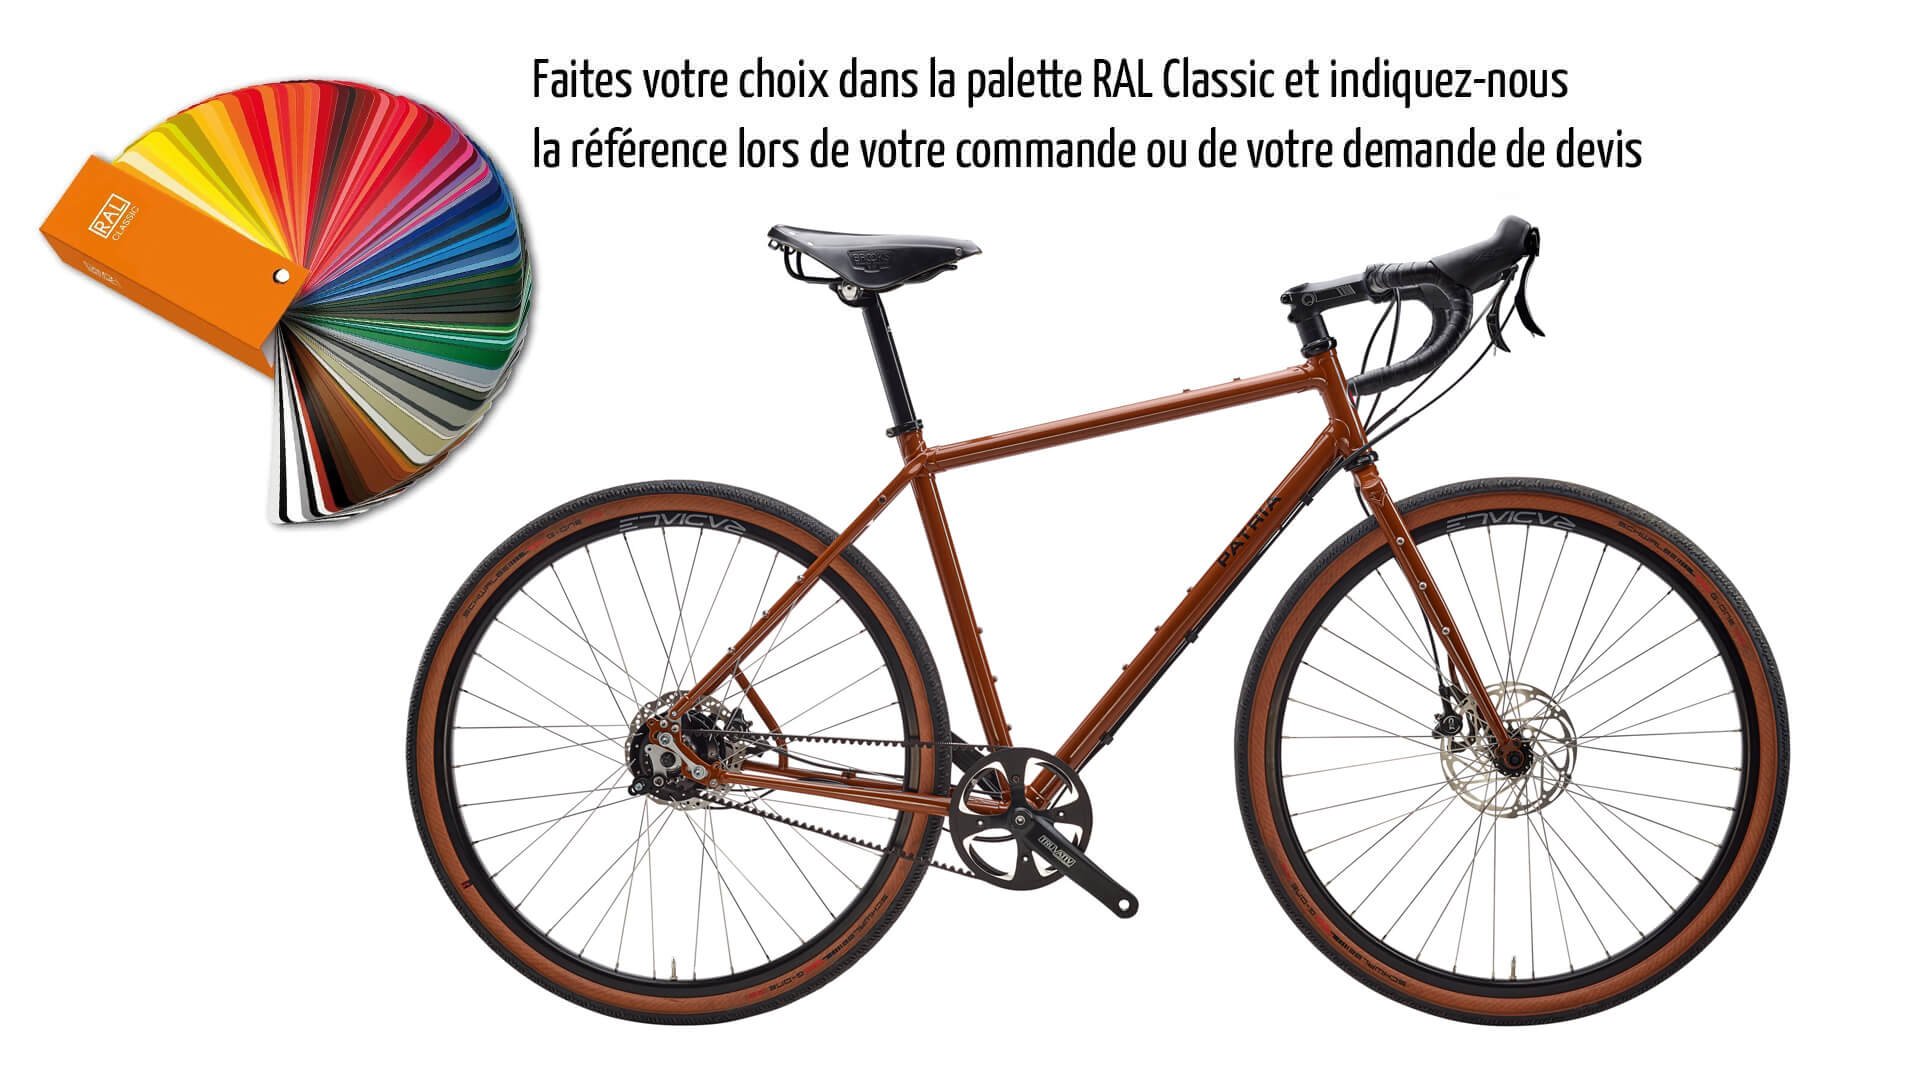 Vélo Gravel Tribos 28" avec cadre Diamant couleur RAL 8007 (brun fauve) et transmission Rohloff 14 vitesses